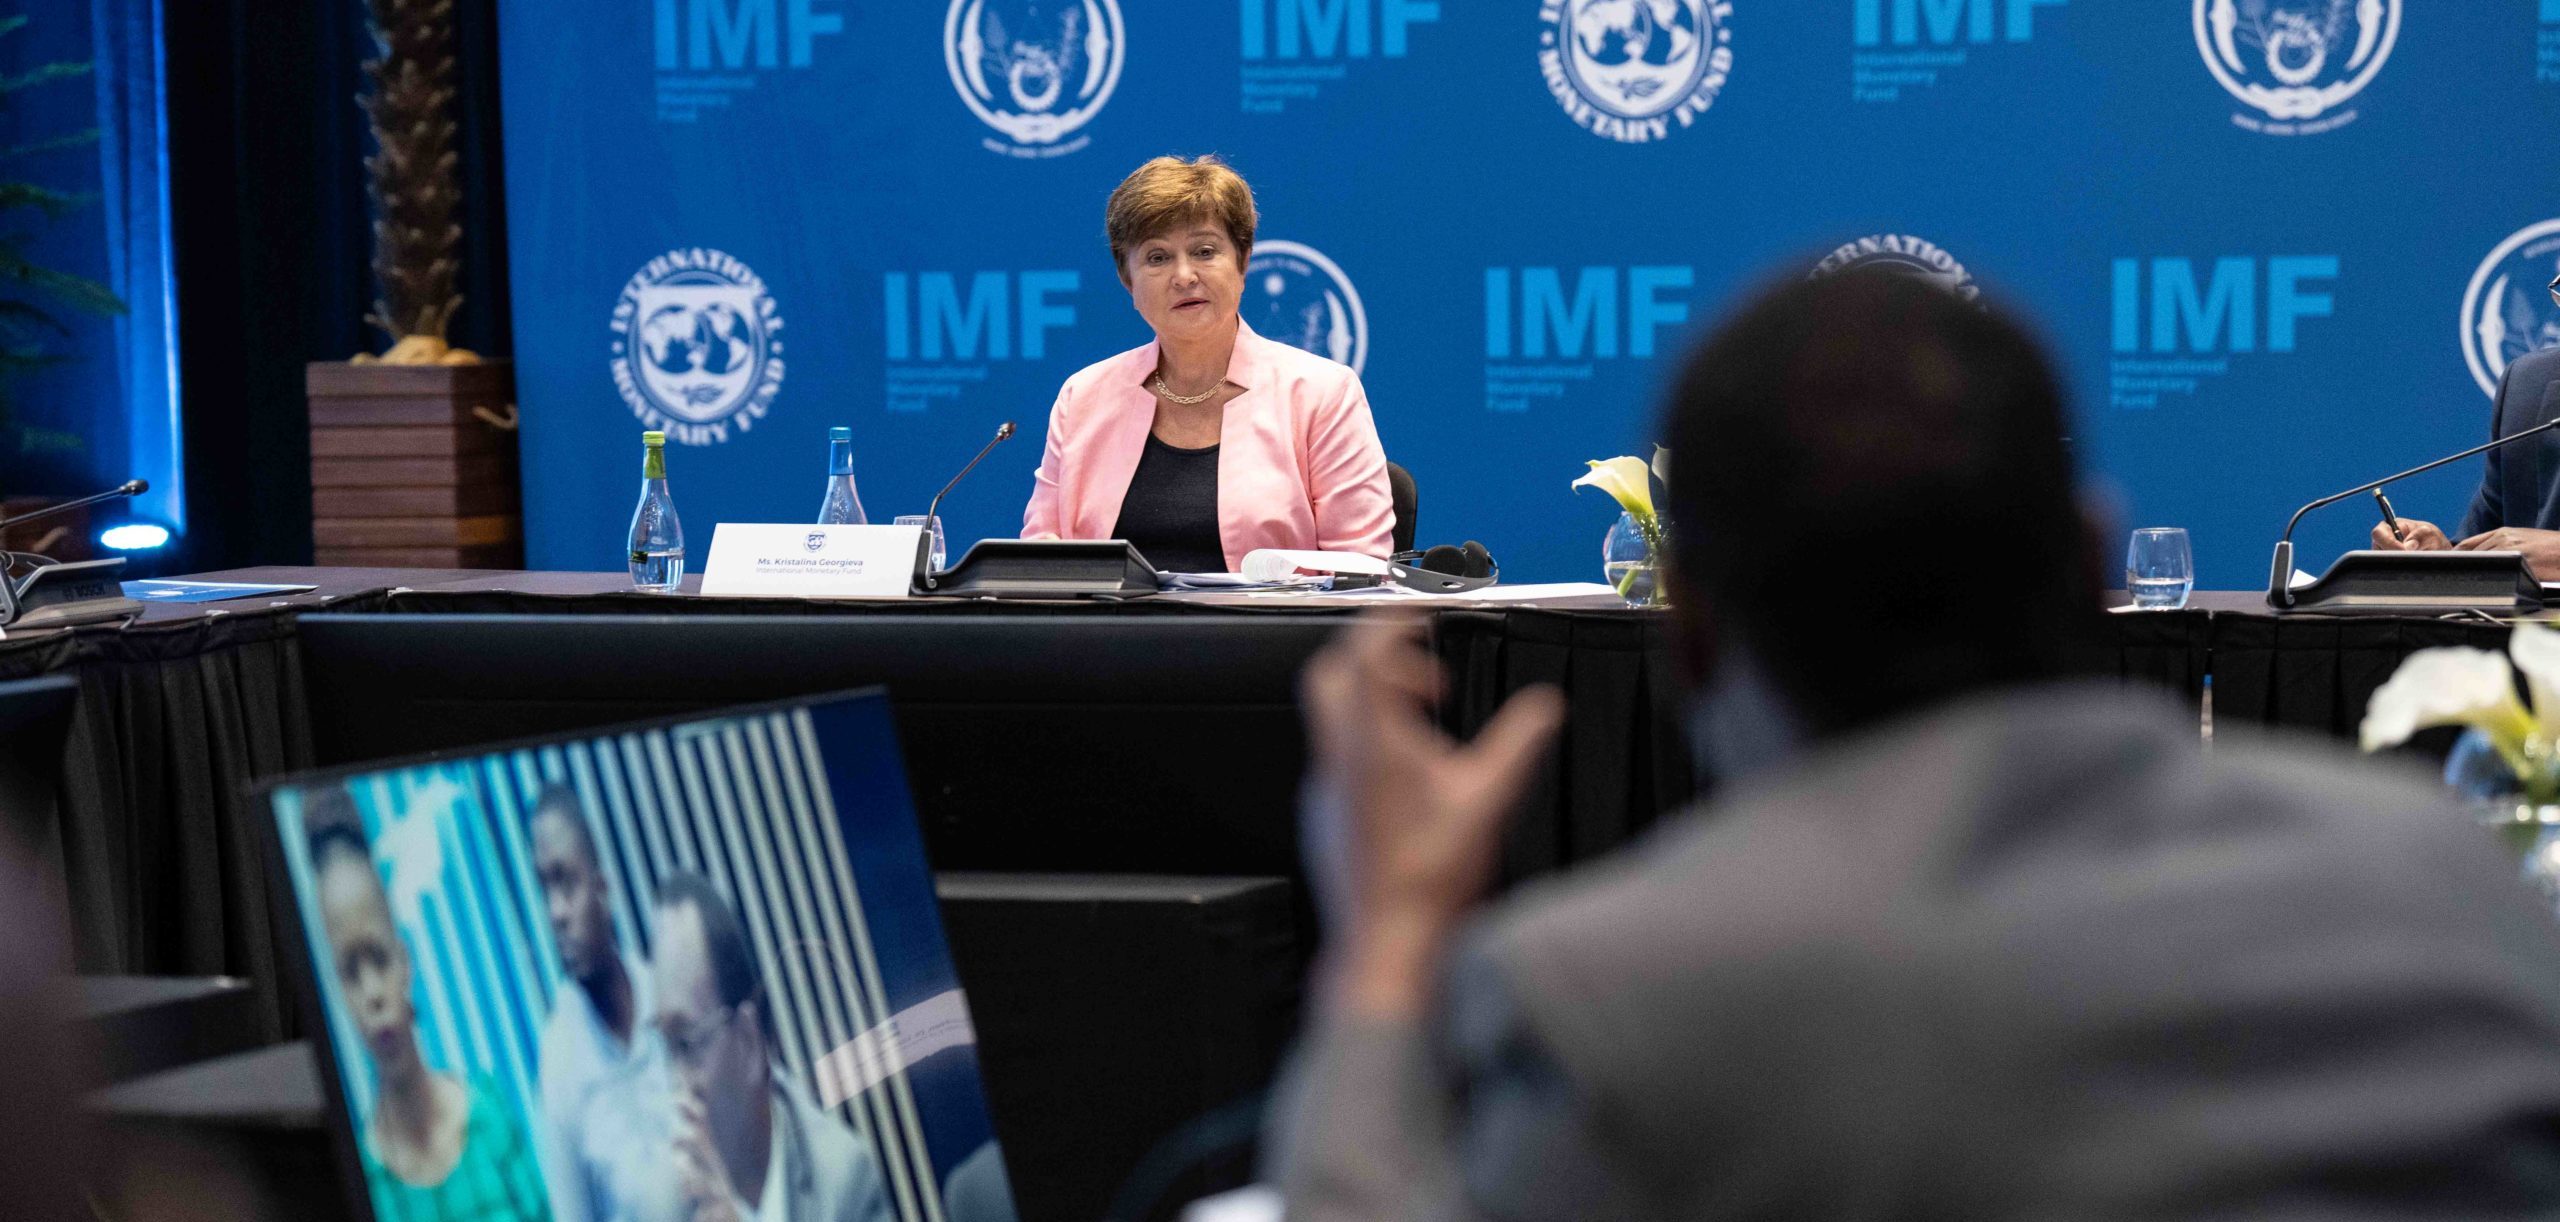 Mudança climática é desafio crítico para o FMI, diz diretora-geral. Na imagem: Kristalina Georgieva, Diretora-geral do Fundo Monetário Internacional – FMI (Foto: Kim Haughton/FMI)